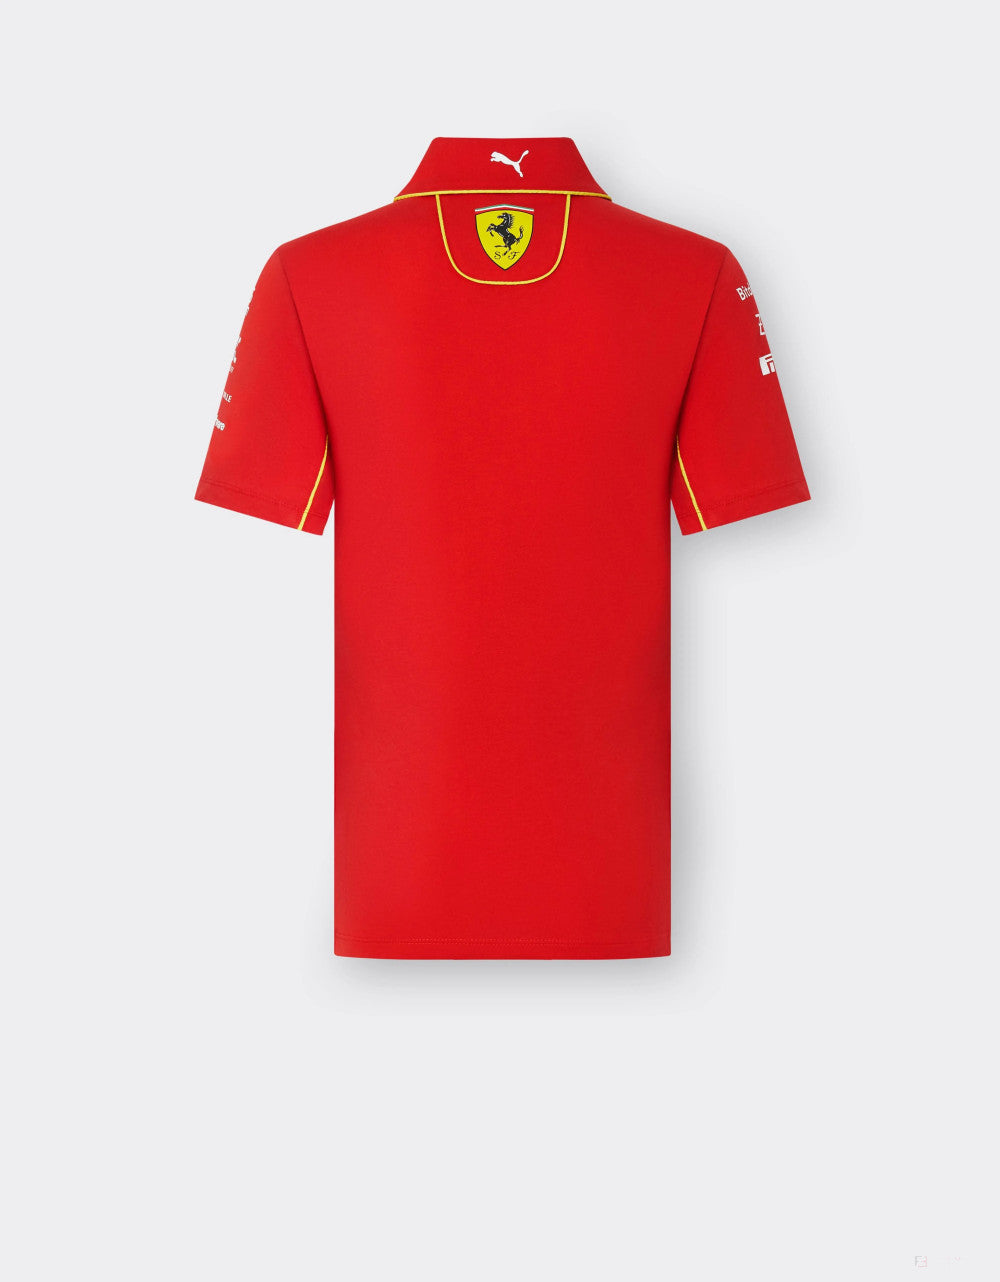 Ferrari tričko s límečkem, Puma, týmové, dámské, červená, 2024